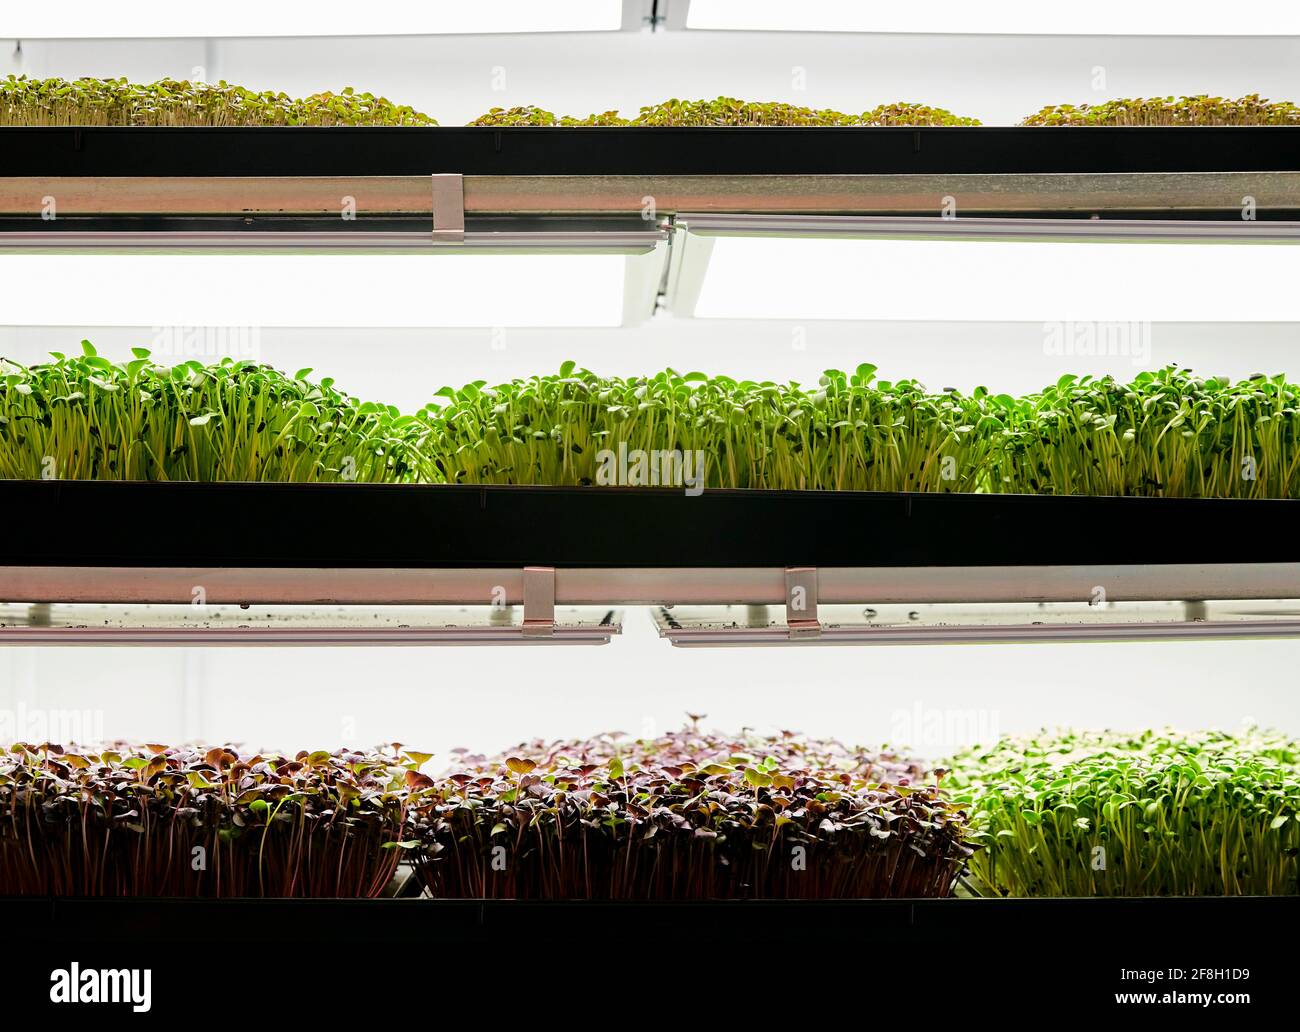 Trays of microgreen seedlings growing in urban farm Stock Photo